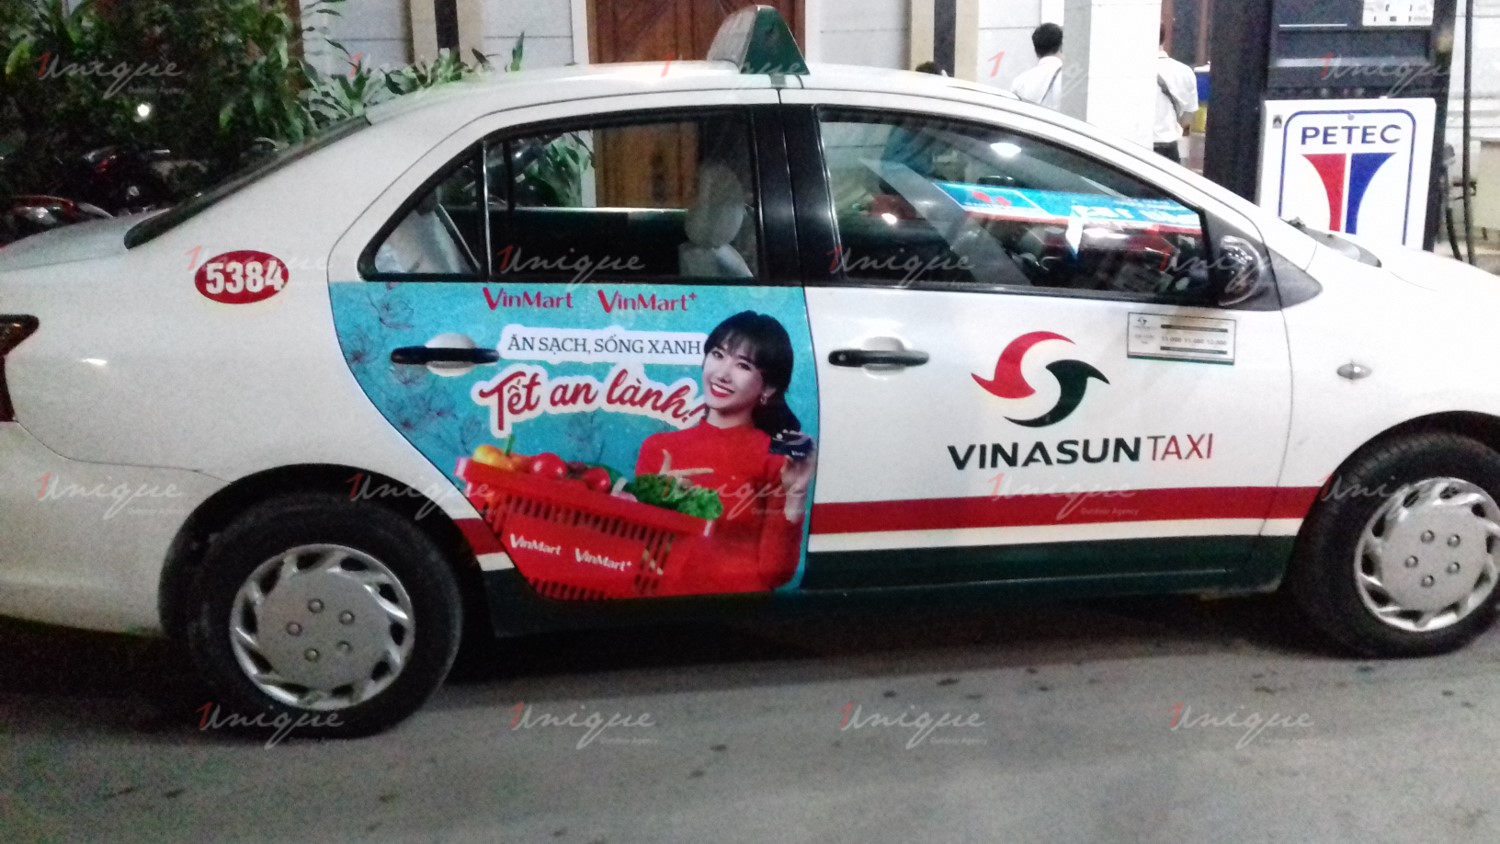 chiến dịch quảng cáo trên taxi của Vinmart trong dịp tết